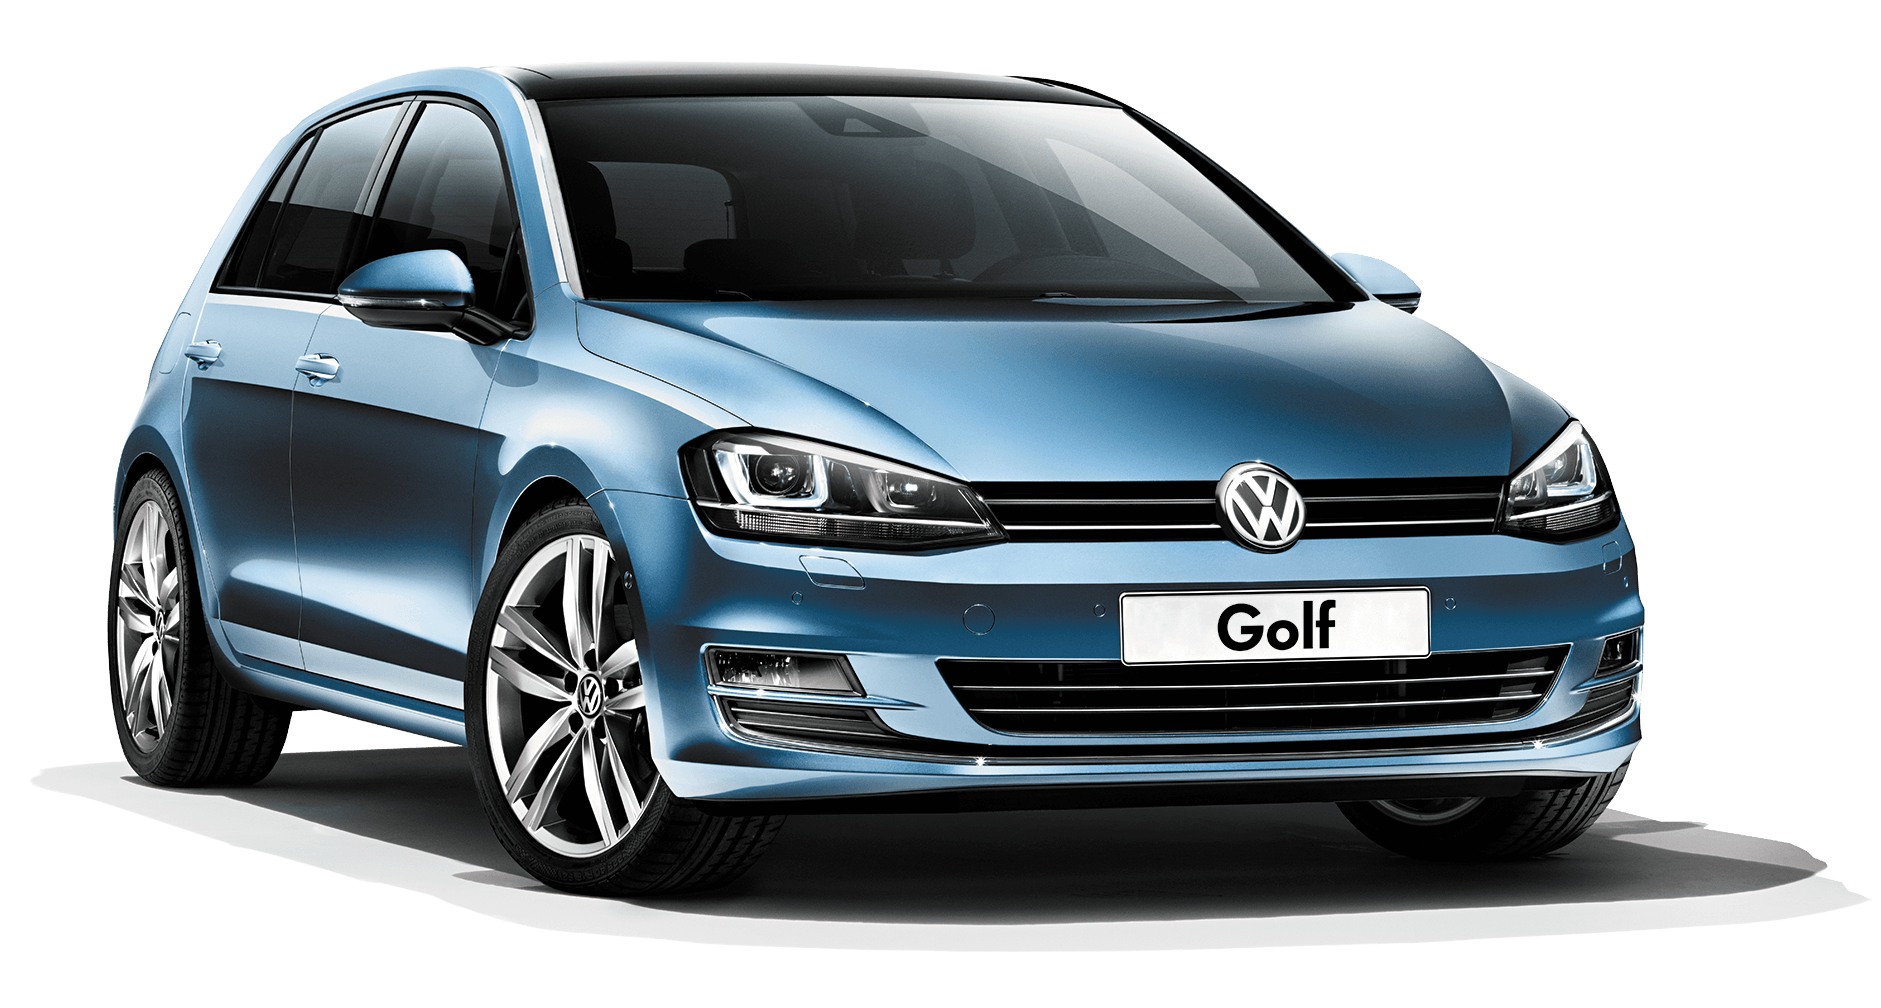 Blue Volkswagen Golf Png Car Image PNG Image